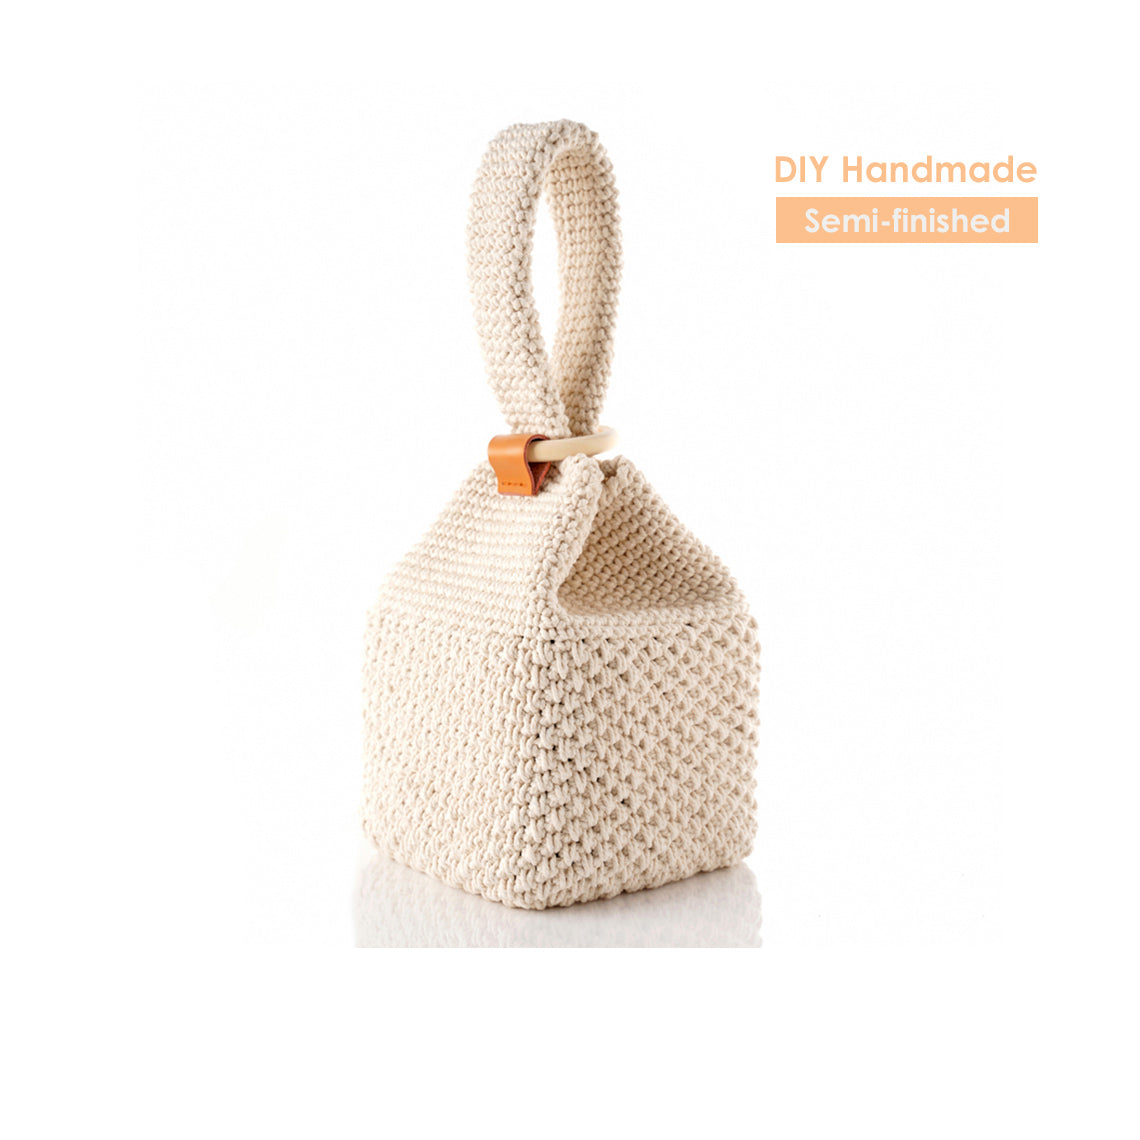 Crochet DIY Kit | Beginners Crochet Kit Easy Project - POPSEWING™